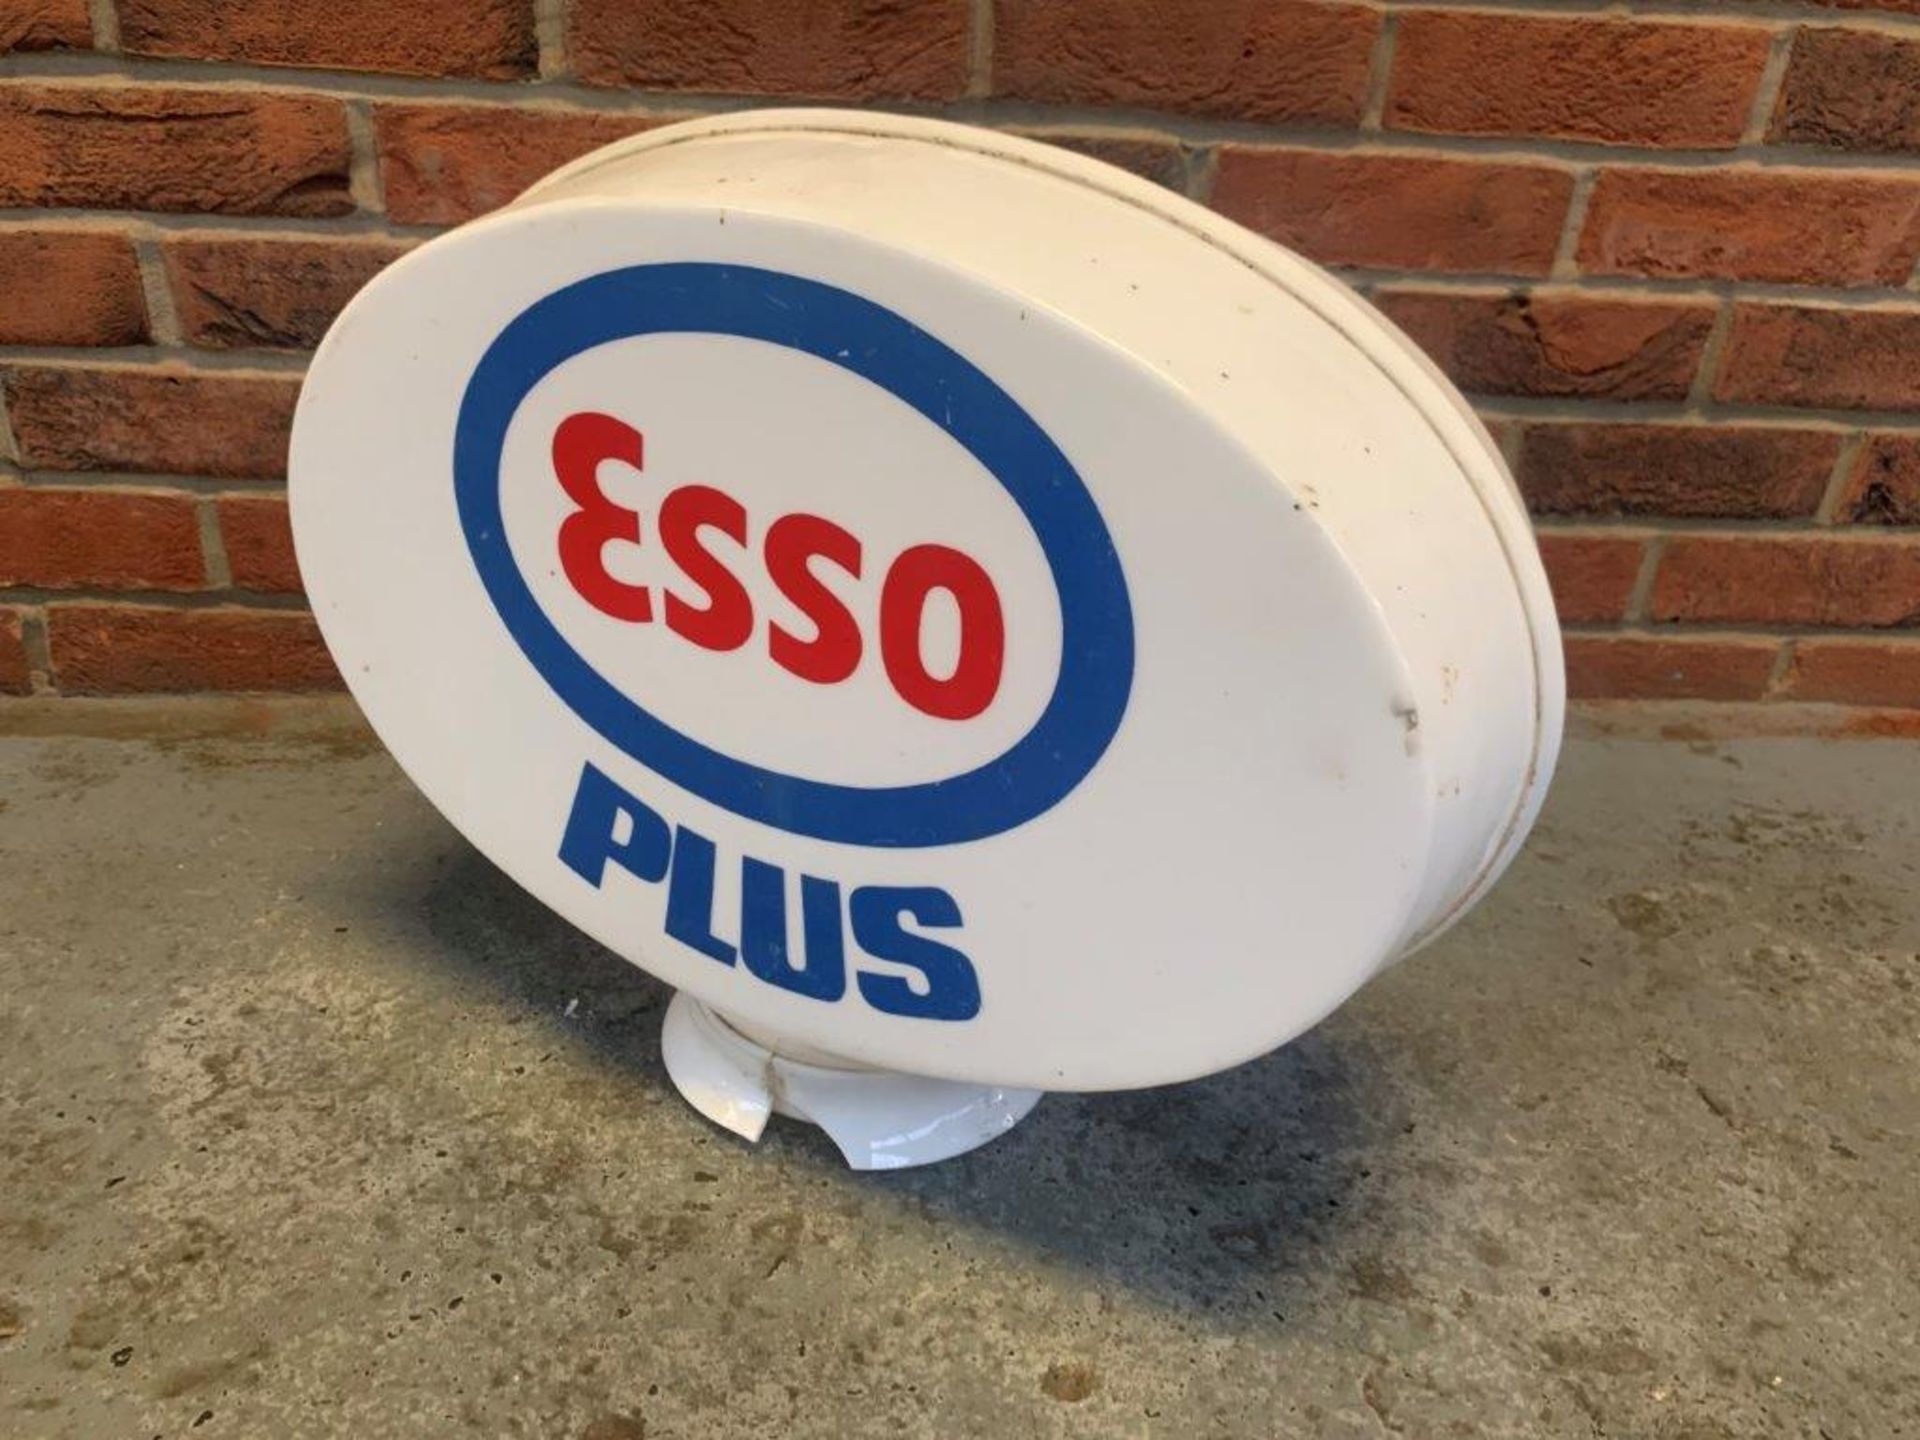 Esso Plus Original Petrol Globe - Image 5 of 6